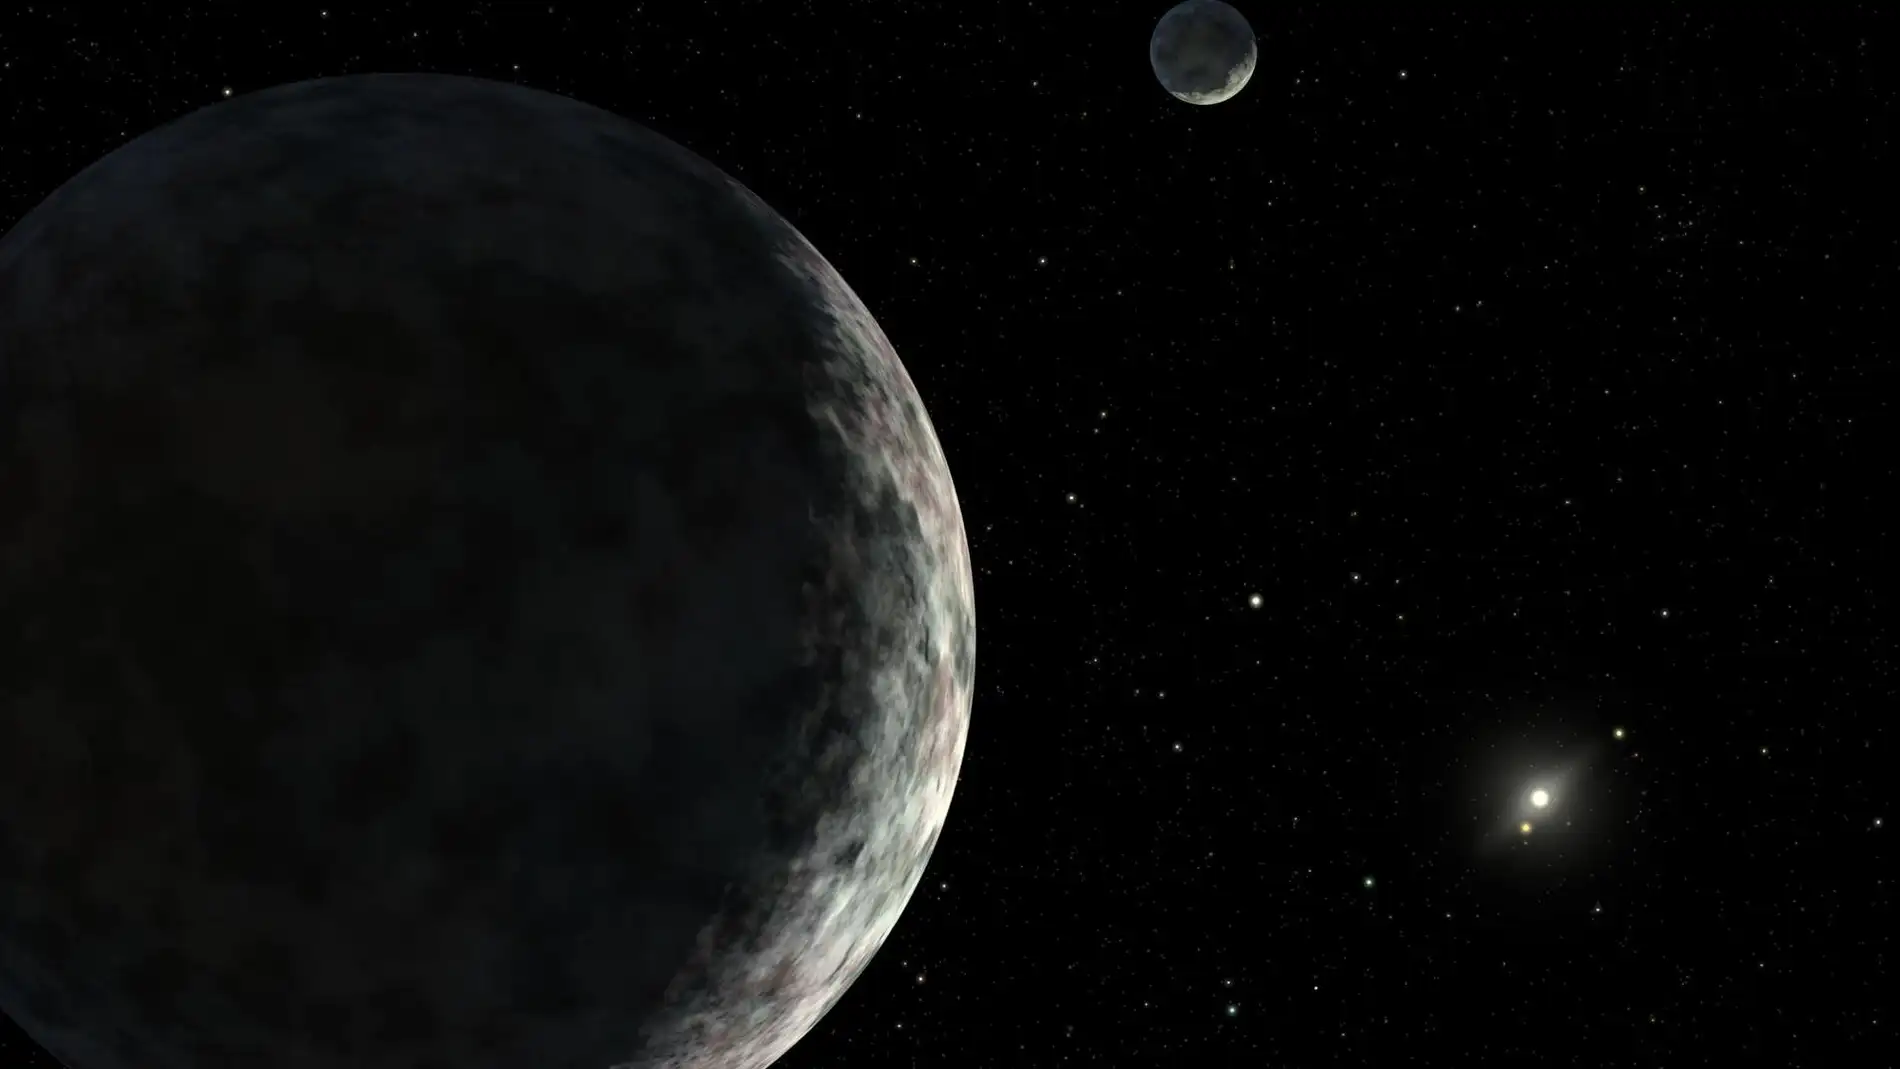 Representación del planeta enano Eris y su luna Dysnomia. Al fondo se situaría el Sol